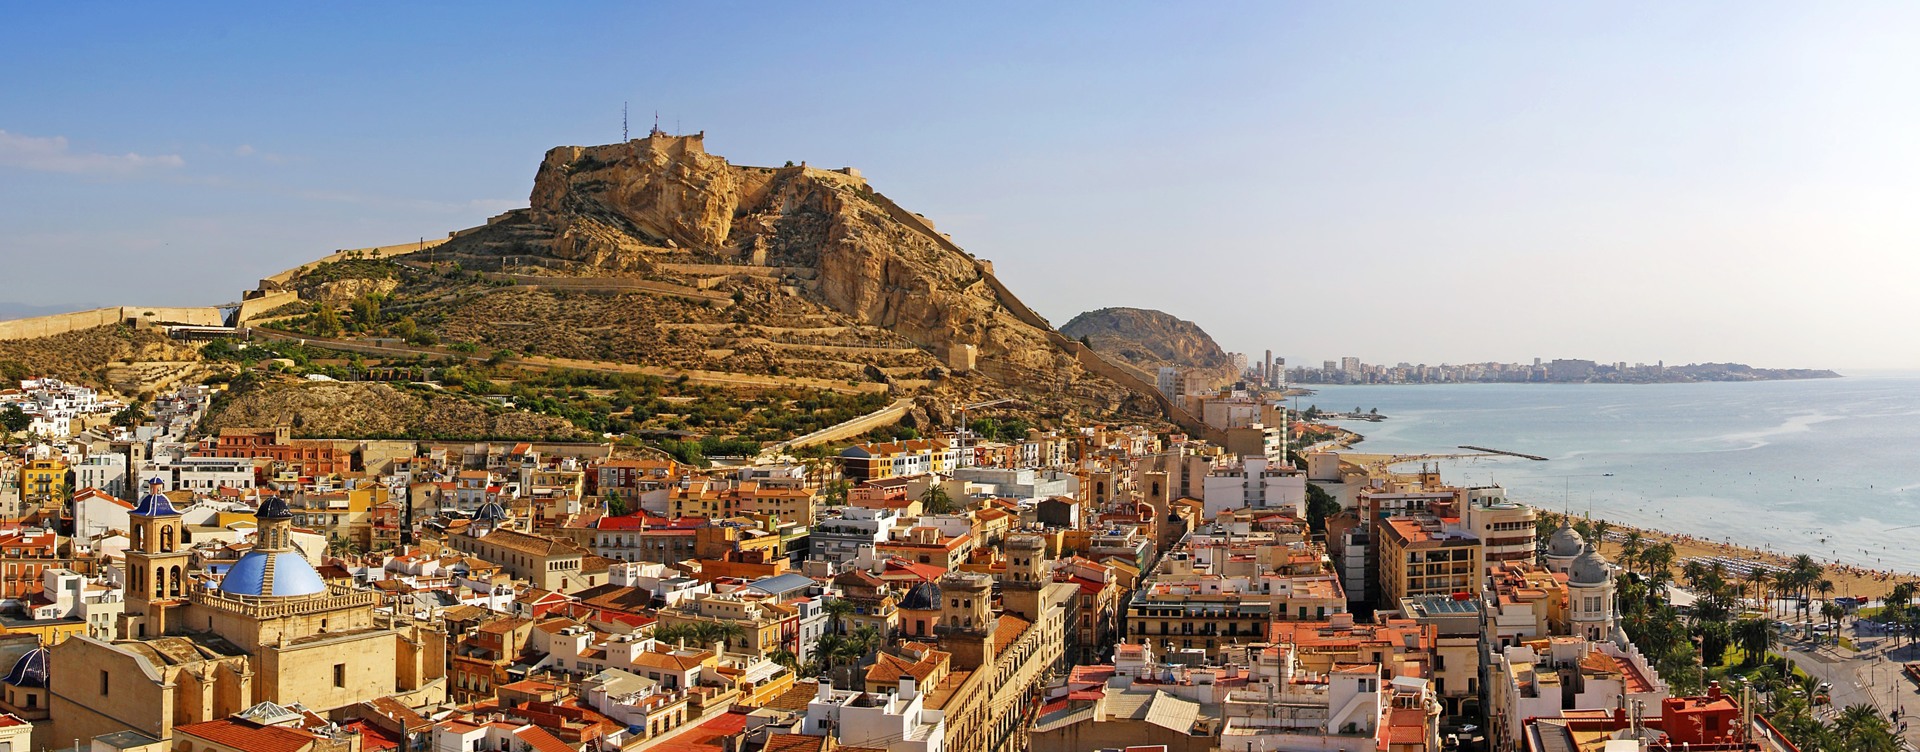 Ontdek de must-do's in Alicante
om je vakantie onvergetelijk te maken